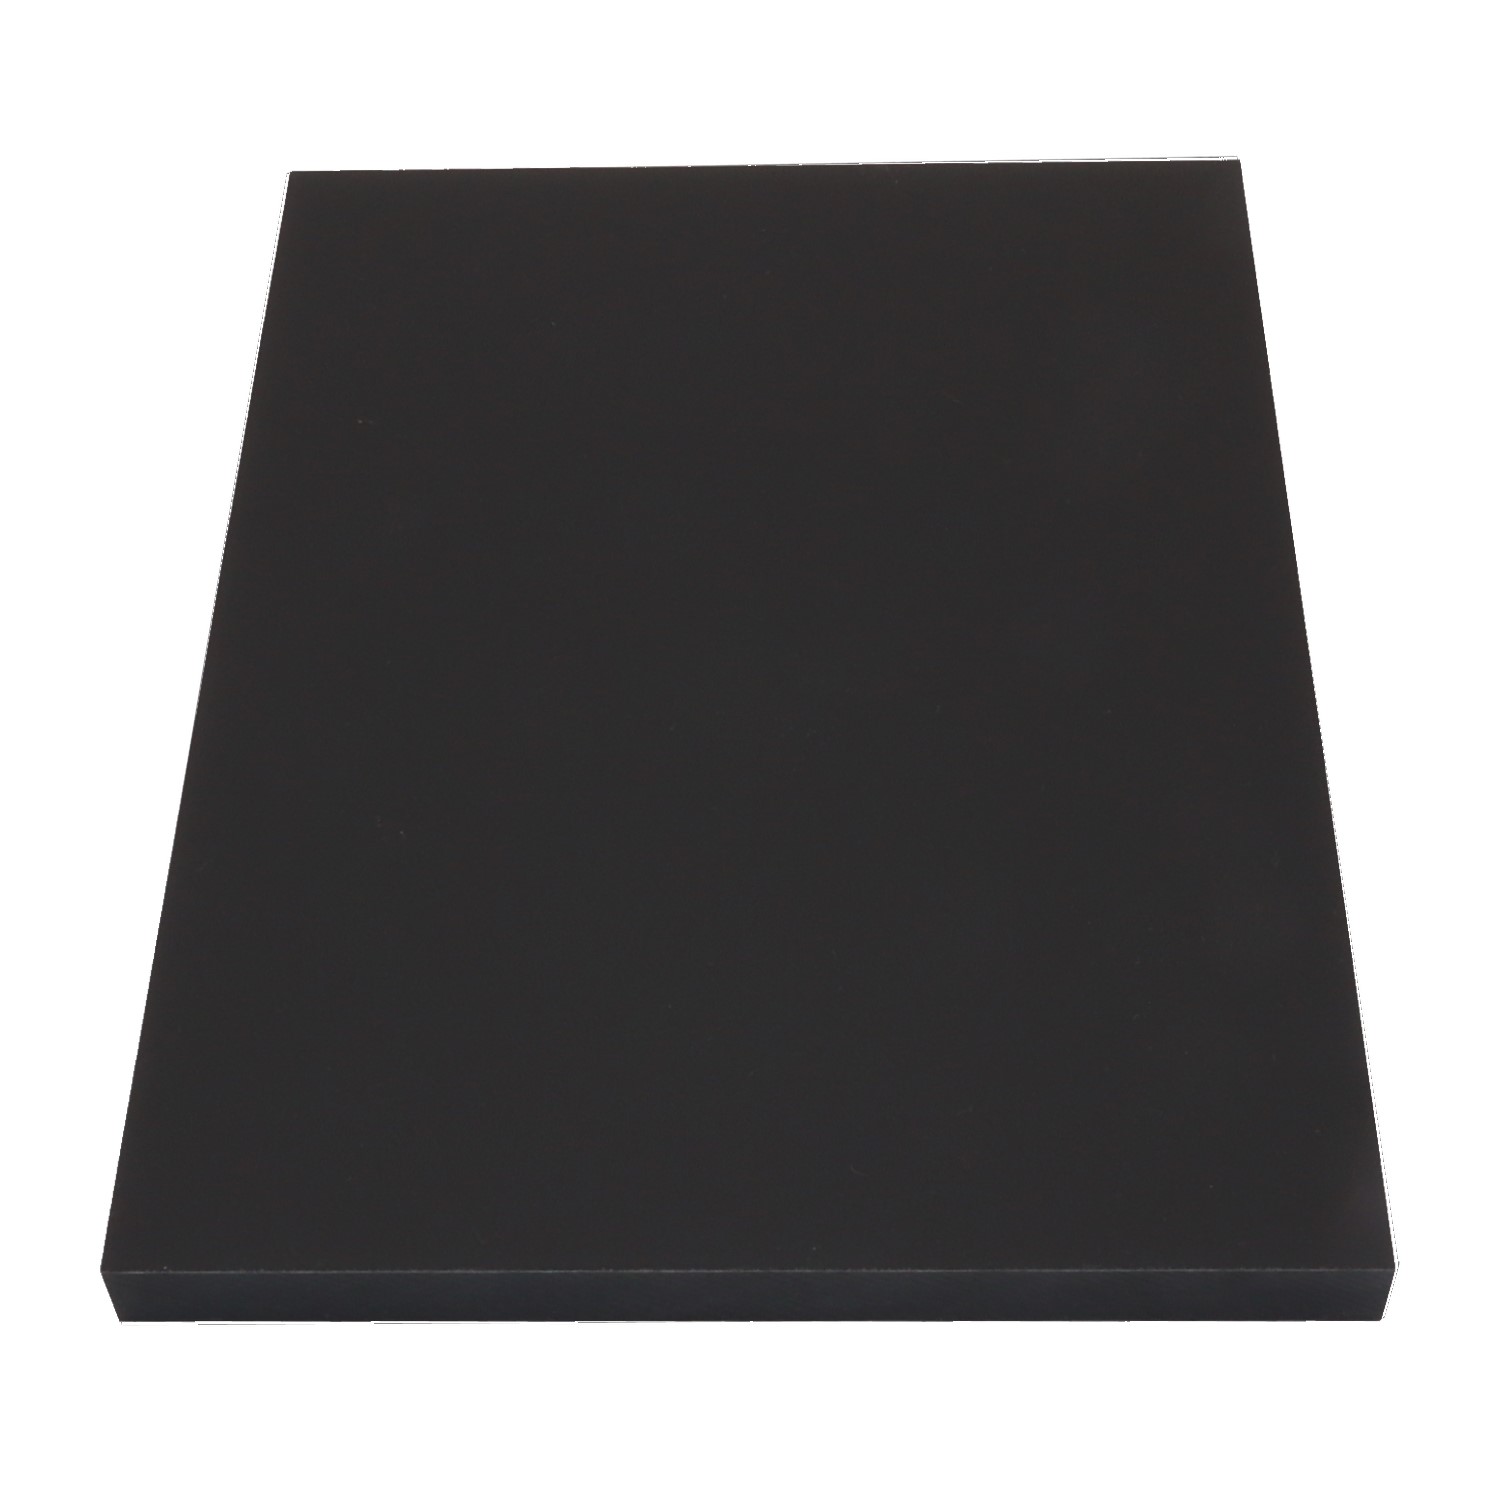 Échantillon compact Carbon noir 8101 6" x 8"